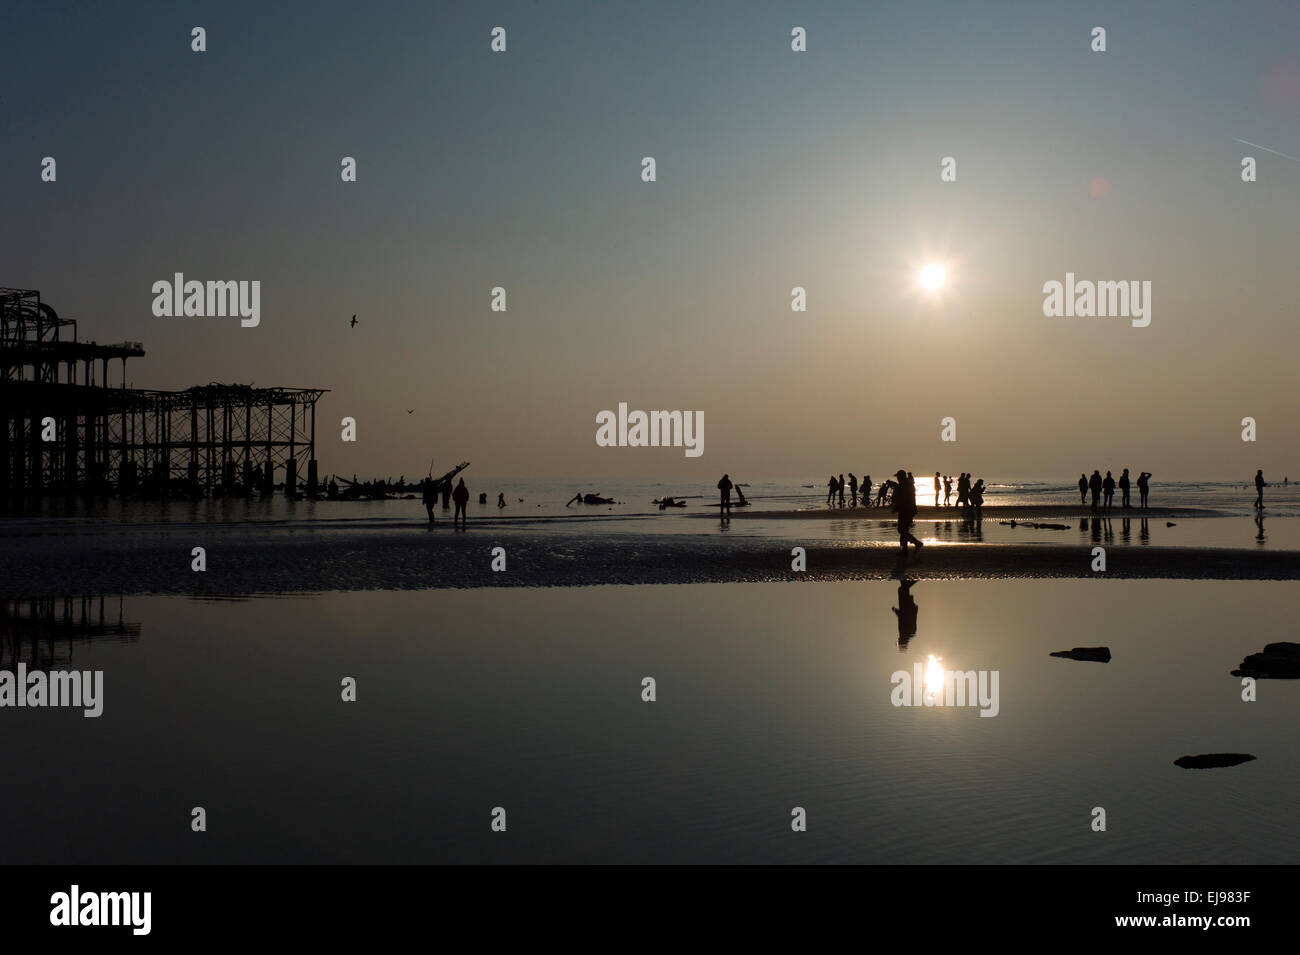 La gente sulla spiaggia e con il minor numero di marea dell'anno, abbandonata Molo Ovest di Brighton,,tramonto, silhouette Foto Stock